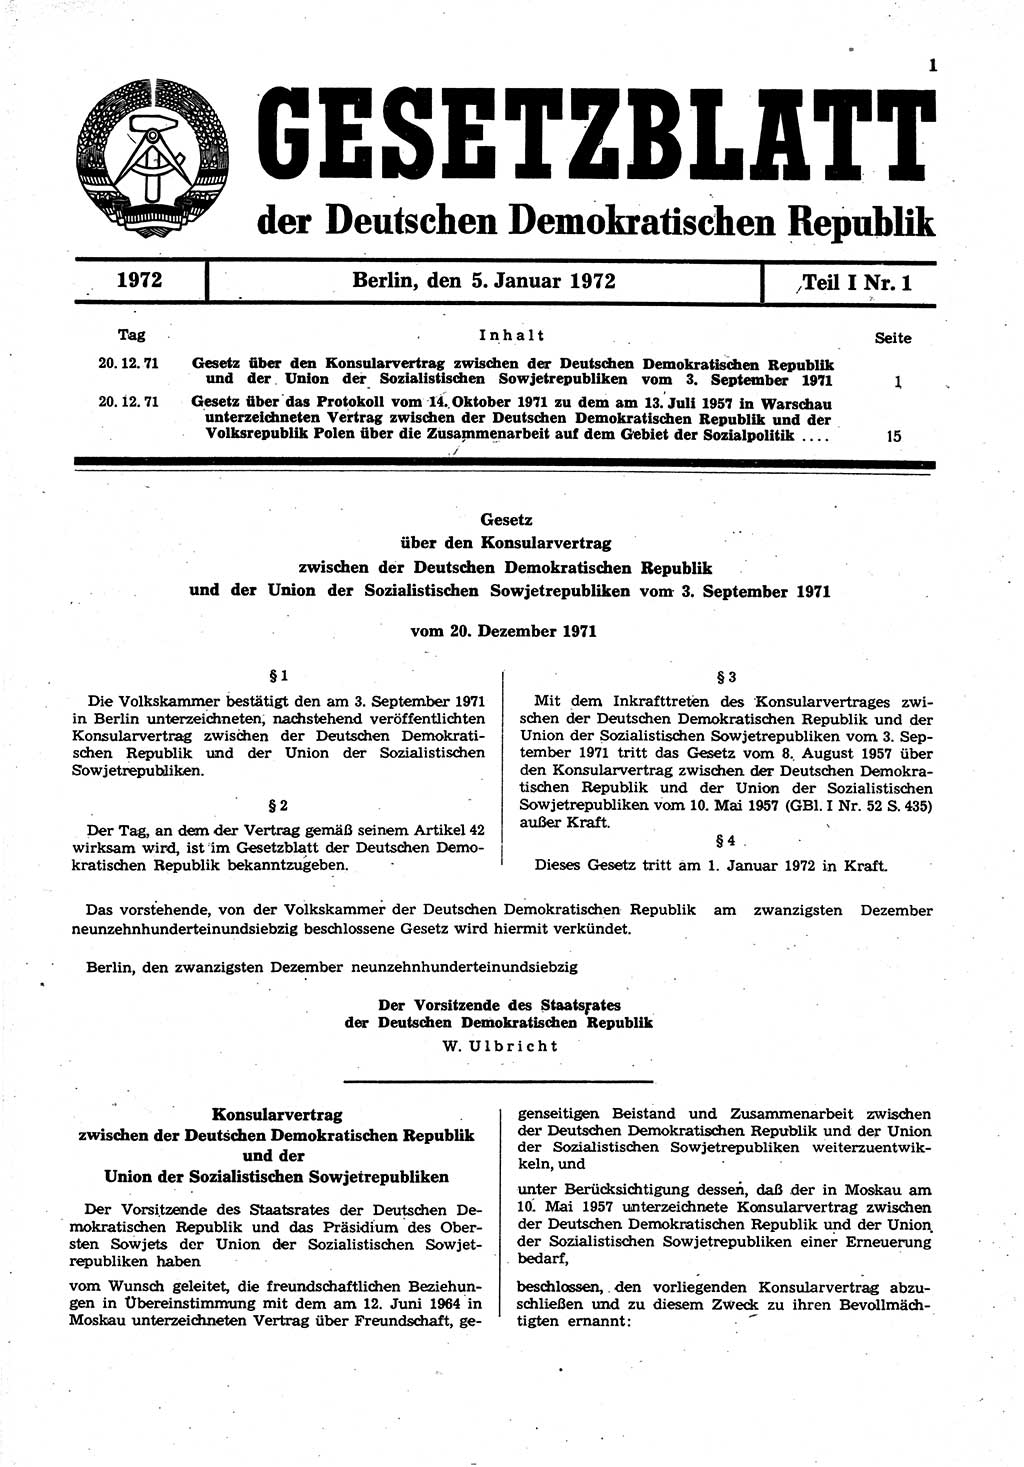 Gesetzblatt (GBl.) der Deutschen Demokratischen Republik (DDR) Teil Ⅰ 1972, Seite 1 (GBl. DDR Ⅰ 1972, S. 1)